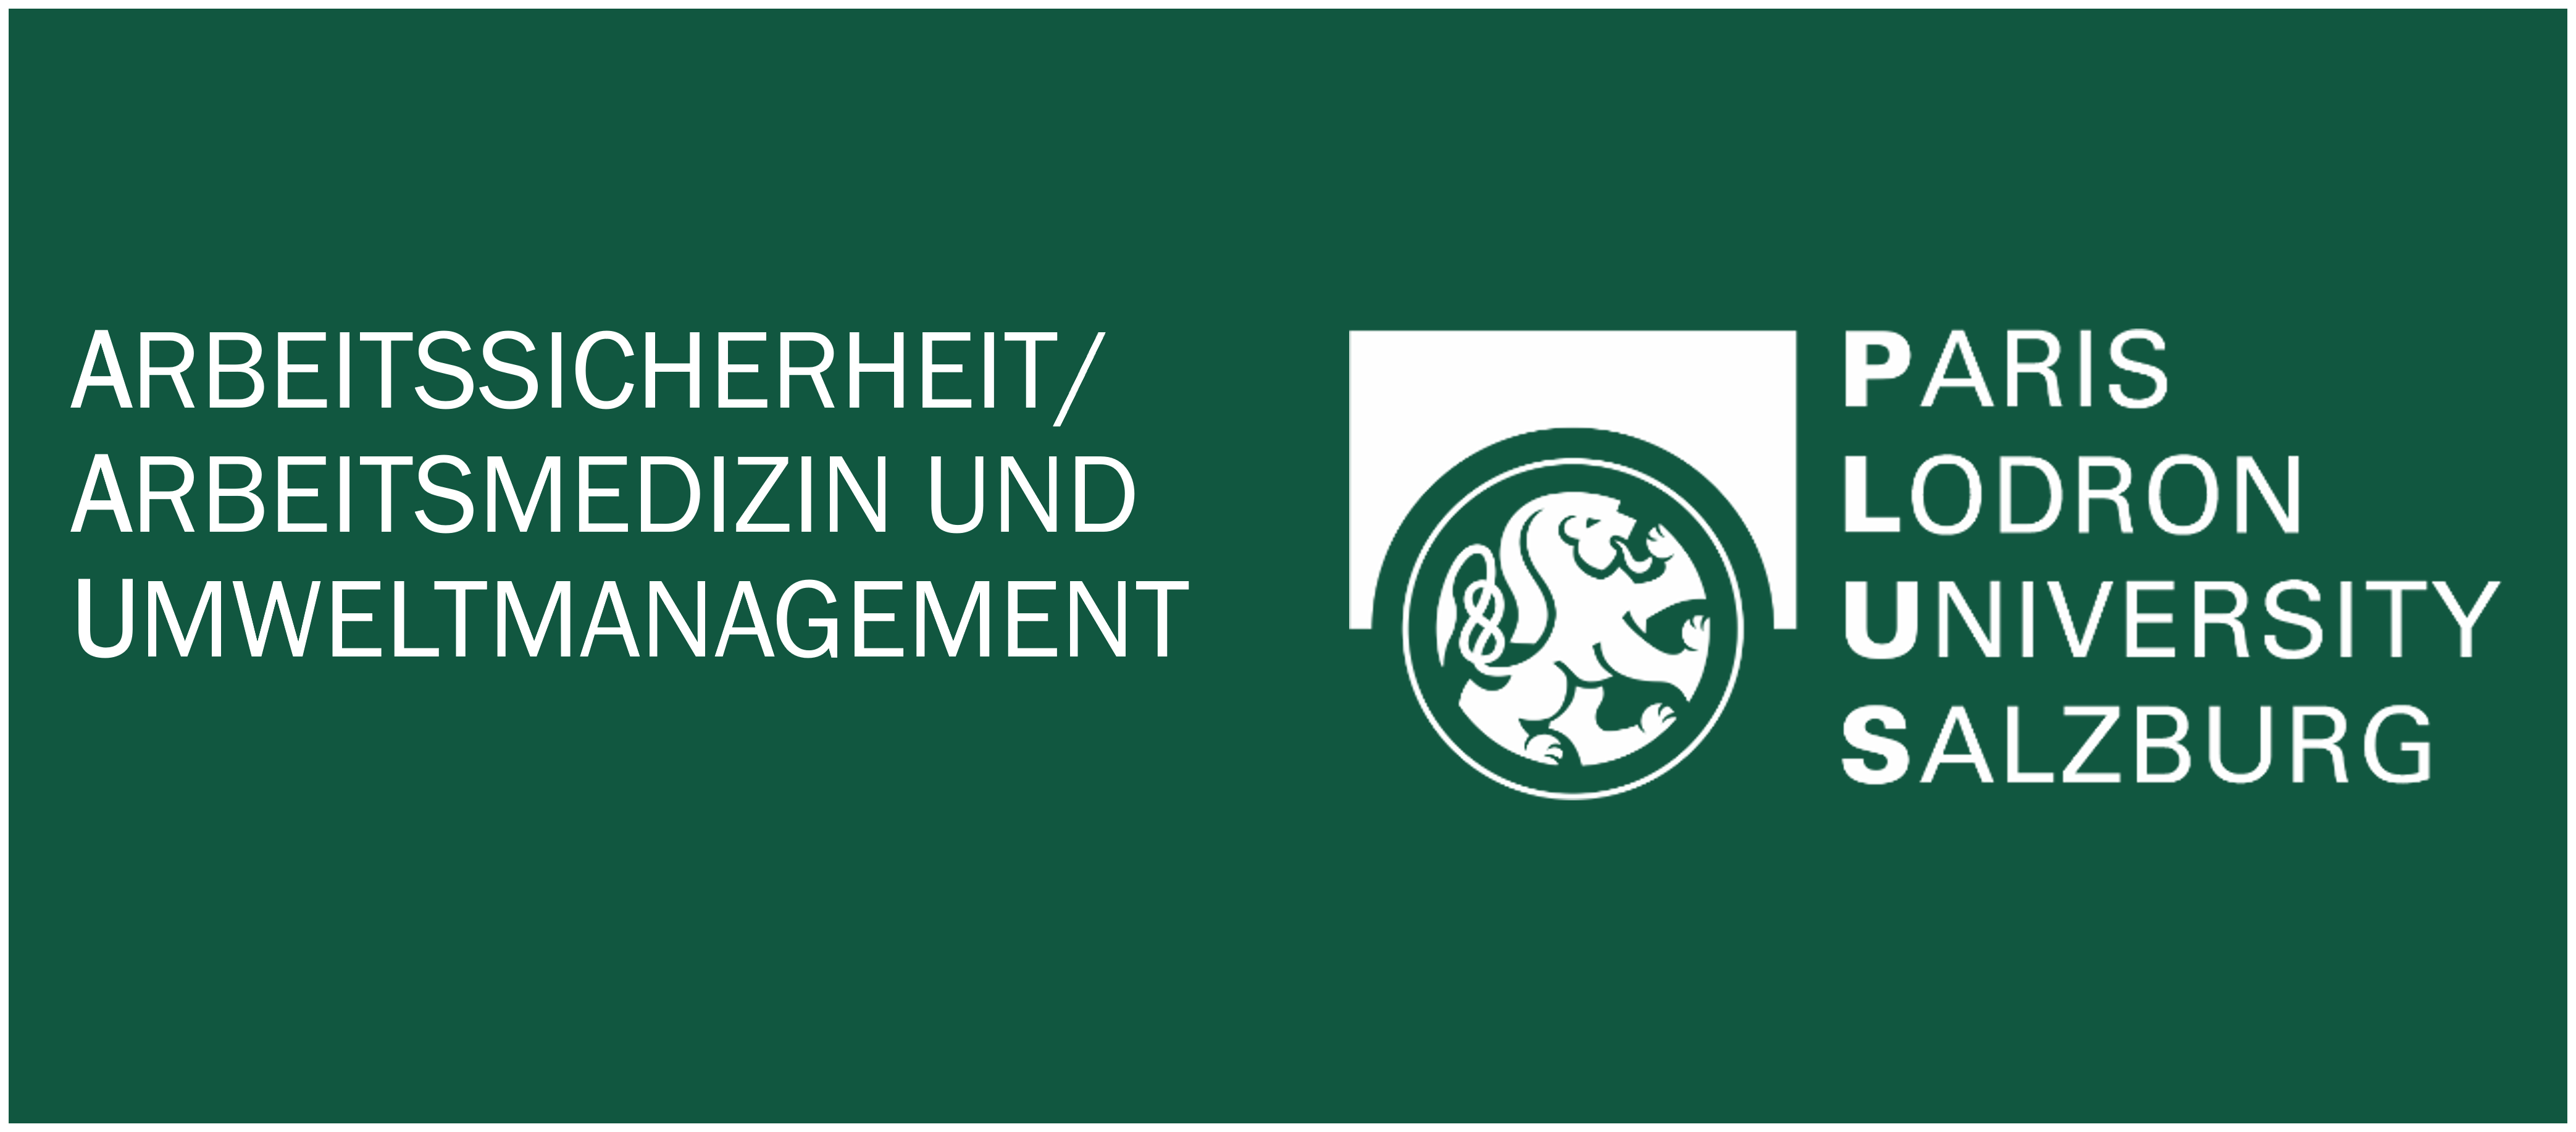 Logo Abteilung Arbeitssicherheit/Arbeitsmedizin und  Umweltamanagement; und
Link zu Die Abteilung